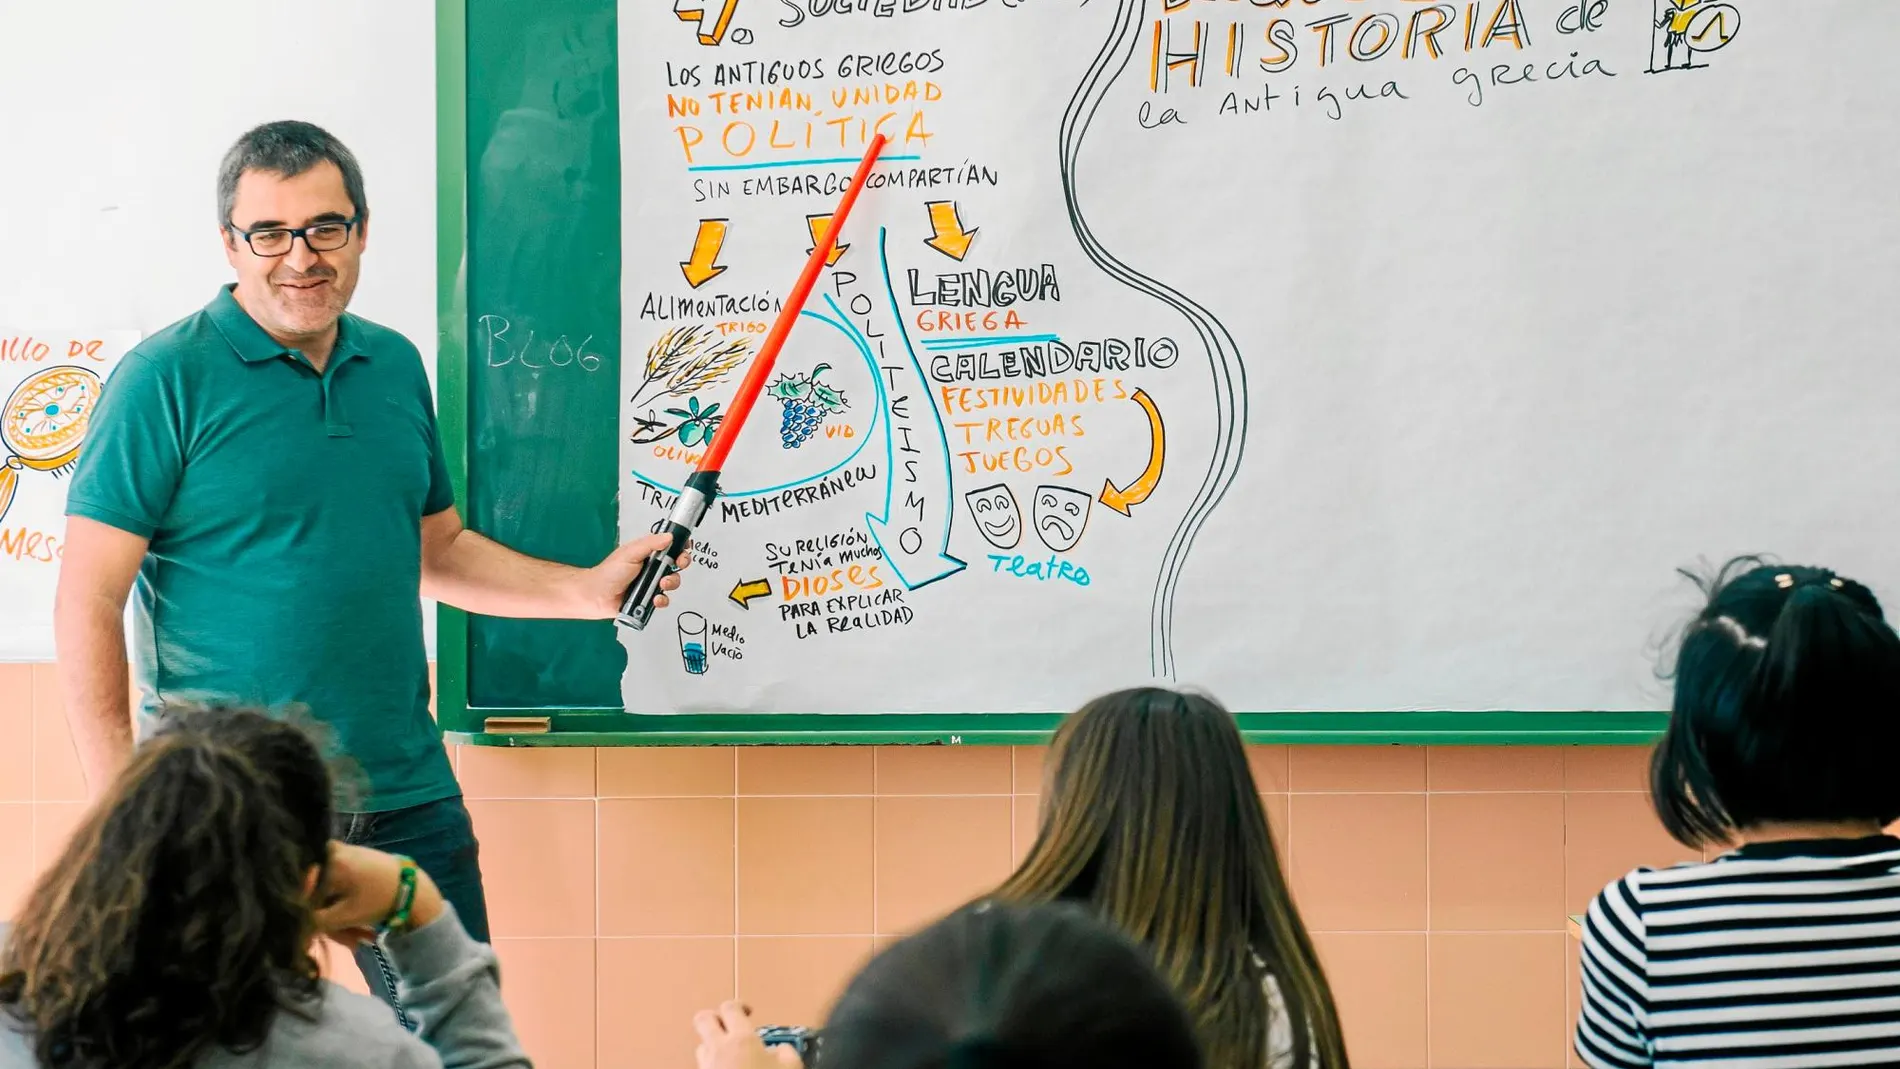 El Darth Vader de sociales asegura que con los gadgets que utiliza capta la atención de los alumnos de Castellón y «a partir de ahí, disfrutan aprendiendo». Foto: Kike Taberner